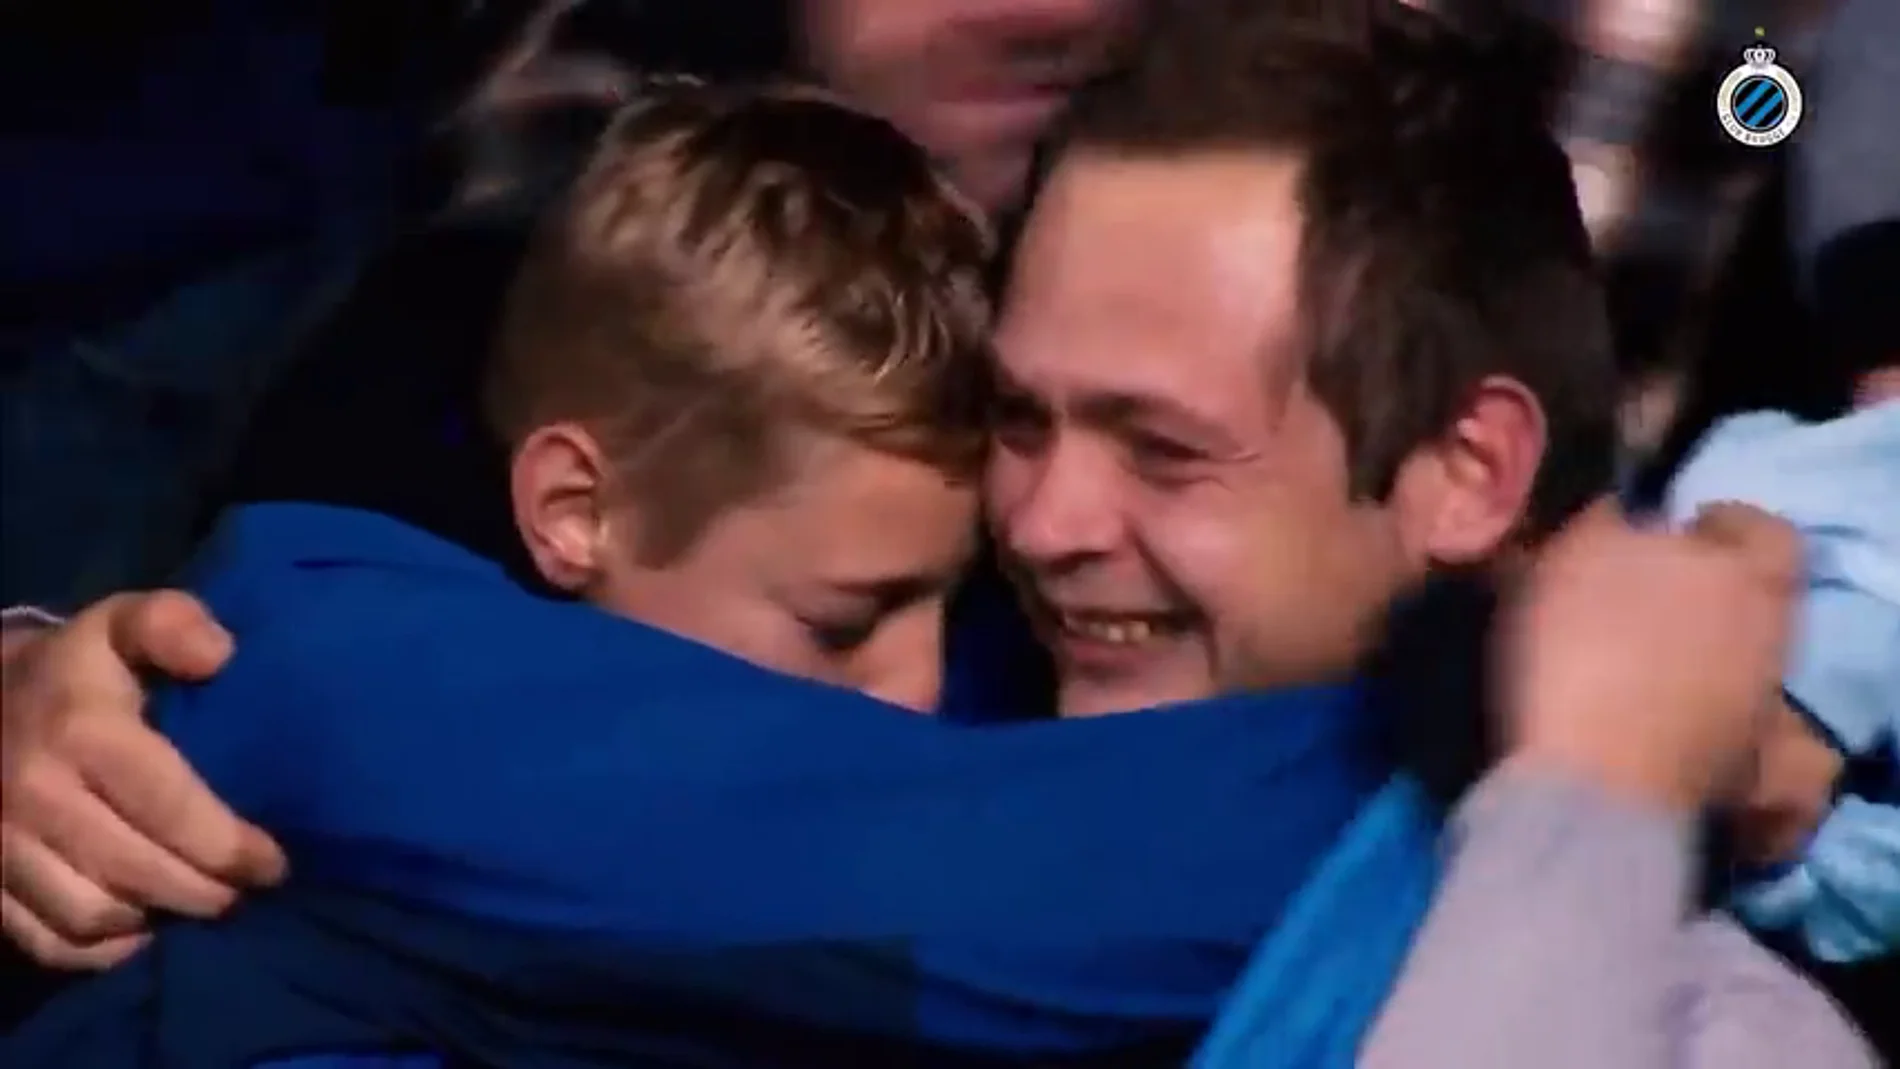 Emociona solo con verlo: el maravilloso gesto de Vormer con un niño en la Liga belga